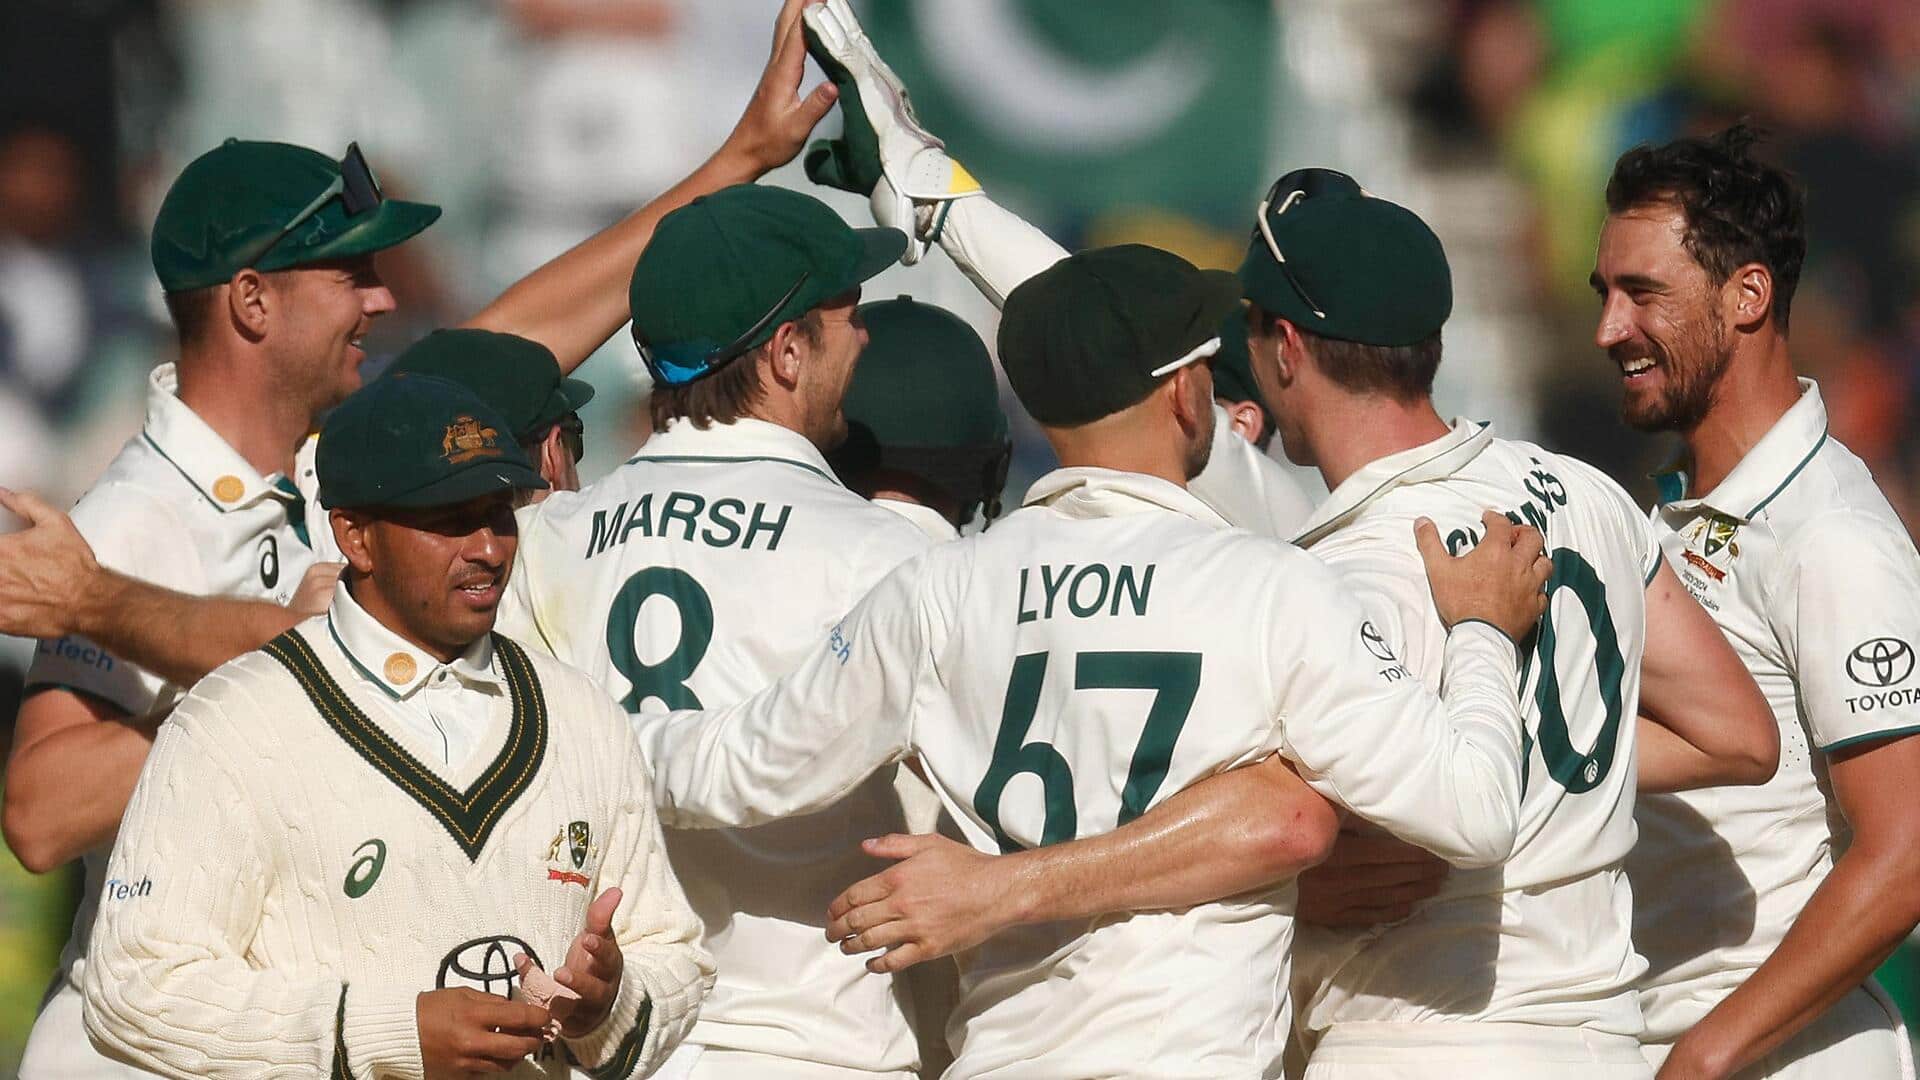 एडिलेड टेस्ट: वेस्टइंडीज की पारी 188 रन पर सिमटी, ऑस्ट्रेलिया के नाम रहा पहला दिन 